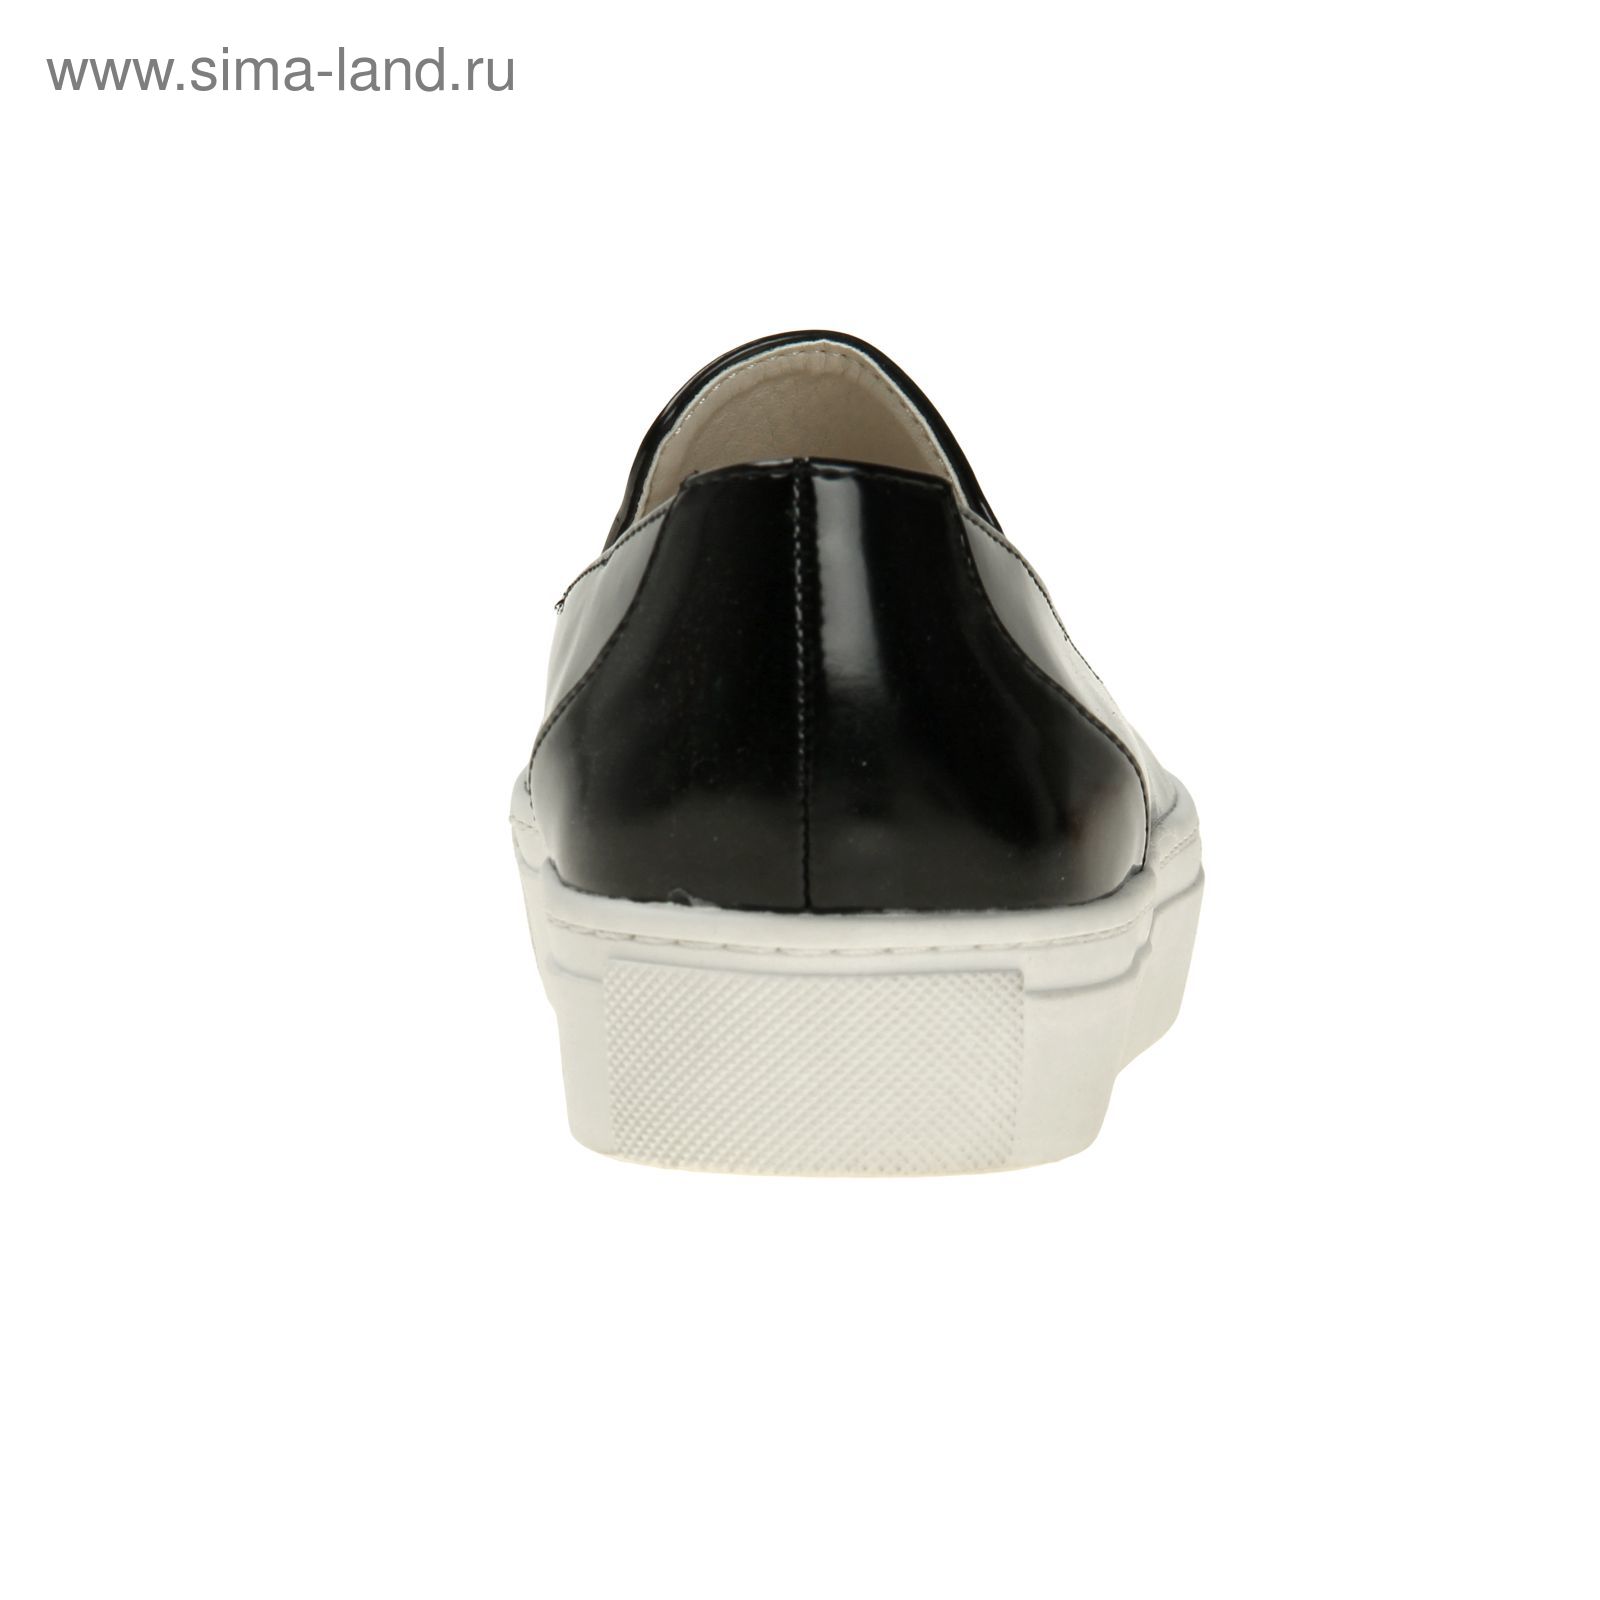 Туфли (слипоны) женские, цвет чёрный, размер 38 (арт. 1616033019)